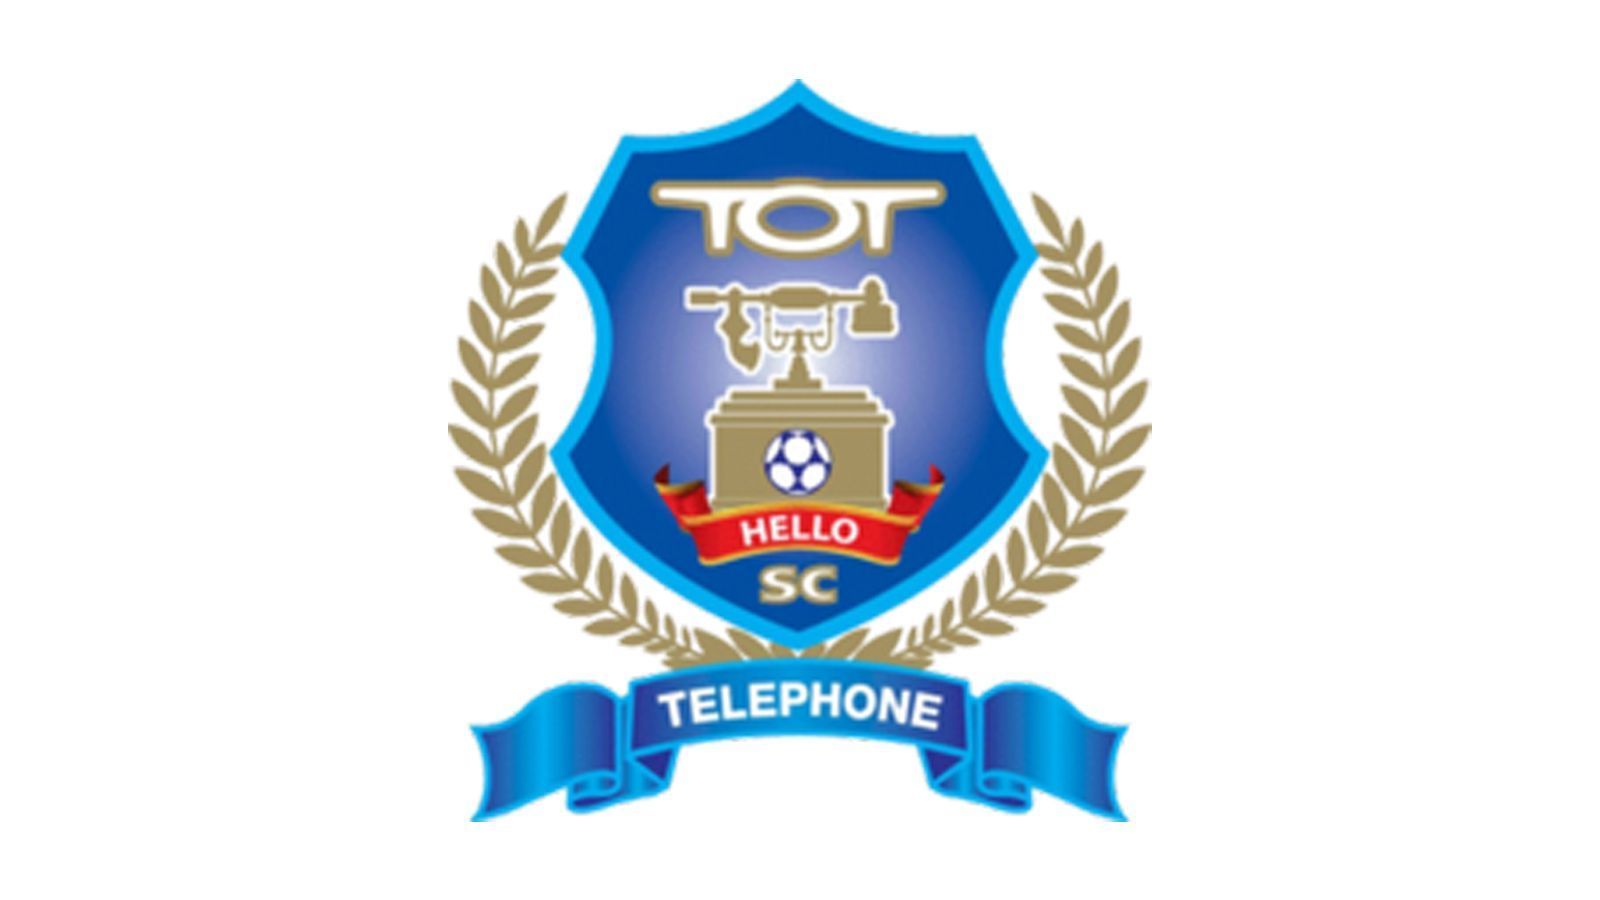 
                <strong>Die hässlichsten Vereinswappen der Welt</strong><br>
                Klub: Telephone Organization of Thailand Sport Club (Spitzname: Hello)Land: Thailand
              